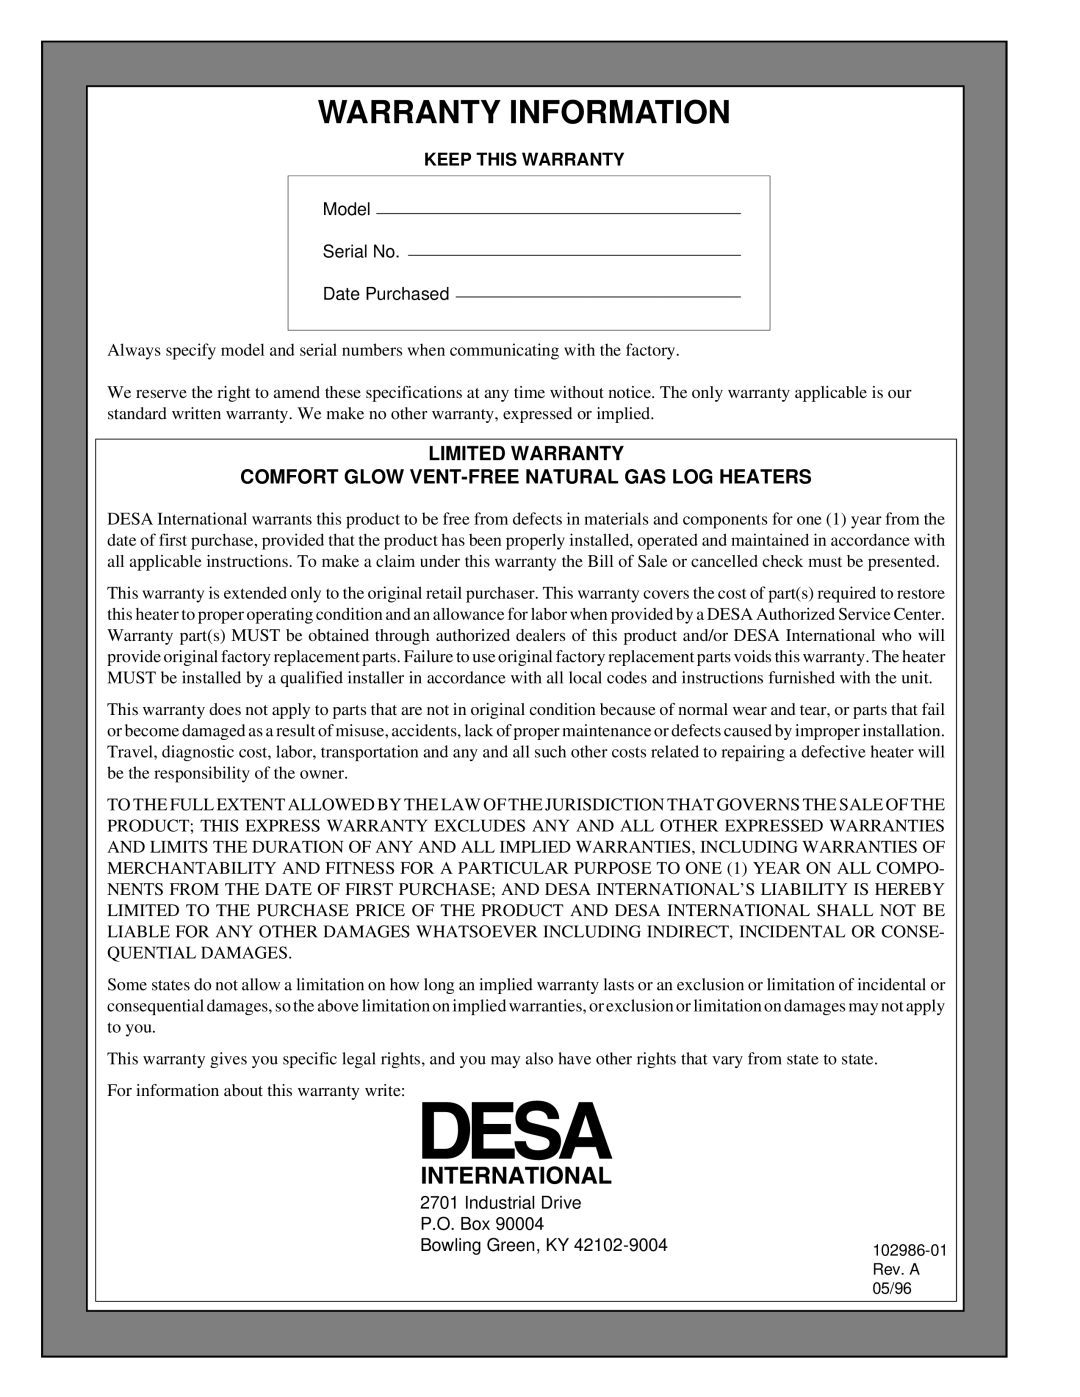 Desa Tech CGD3930N, CGD3018N Warranty Information, Limited Warranty, Comfort Glow Vent-Freenatural Gas Log Heaters 